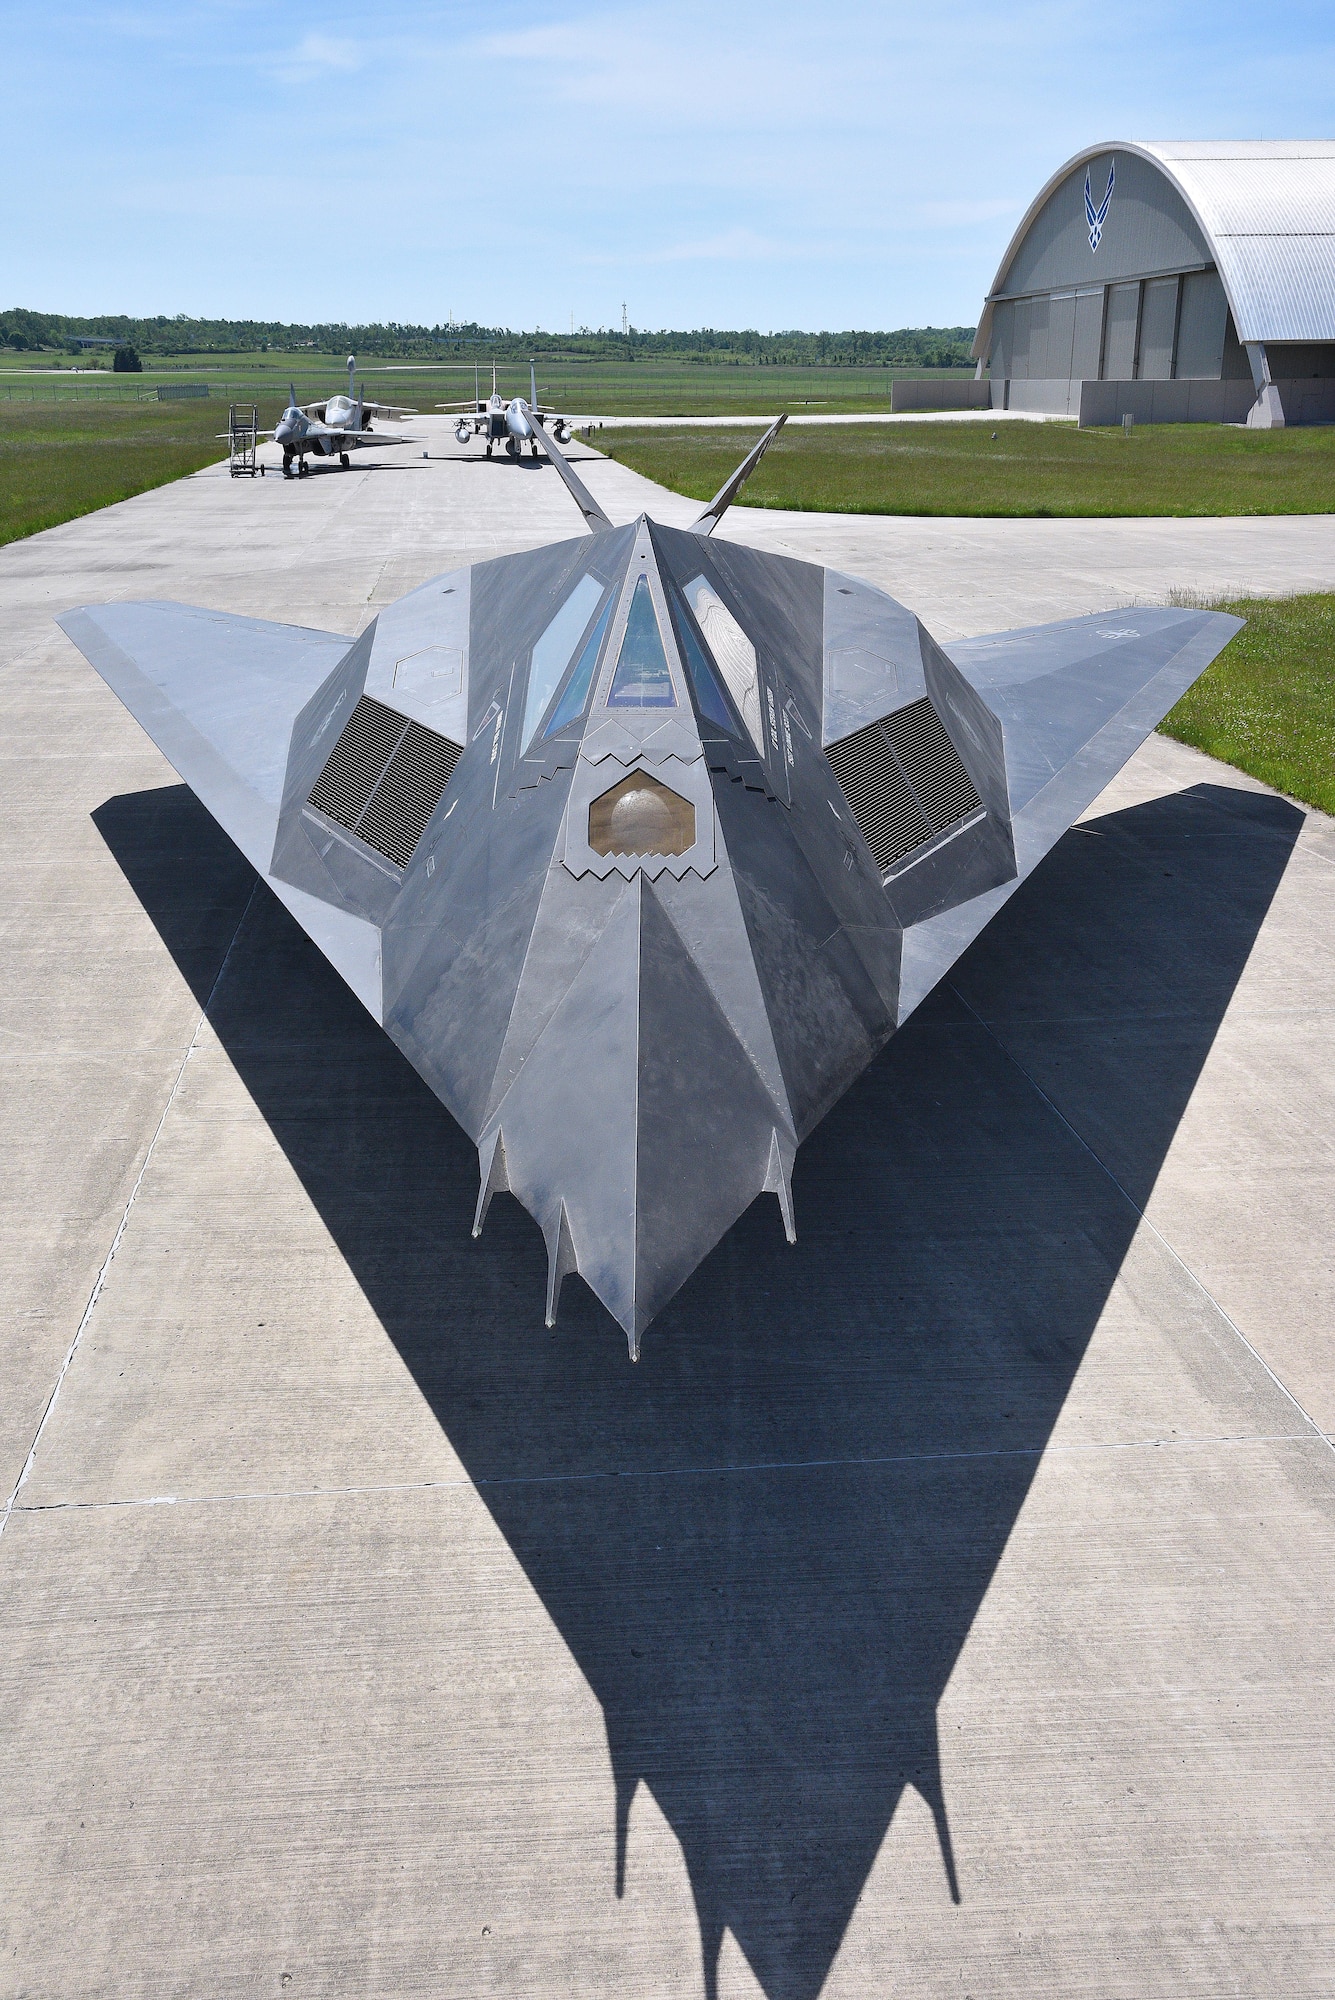 Lockheed F-117A Nighthawk aircraft